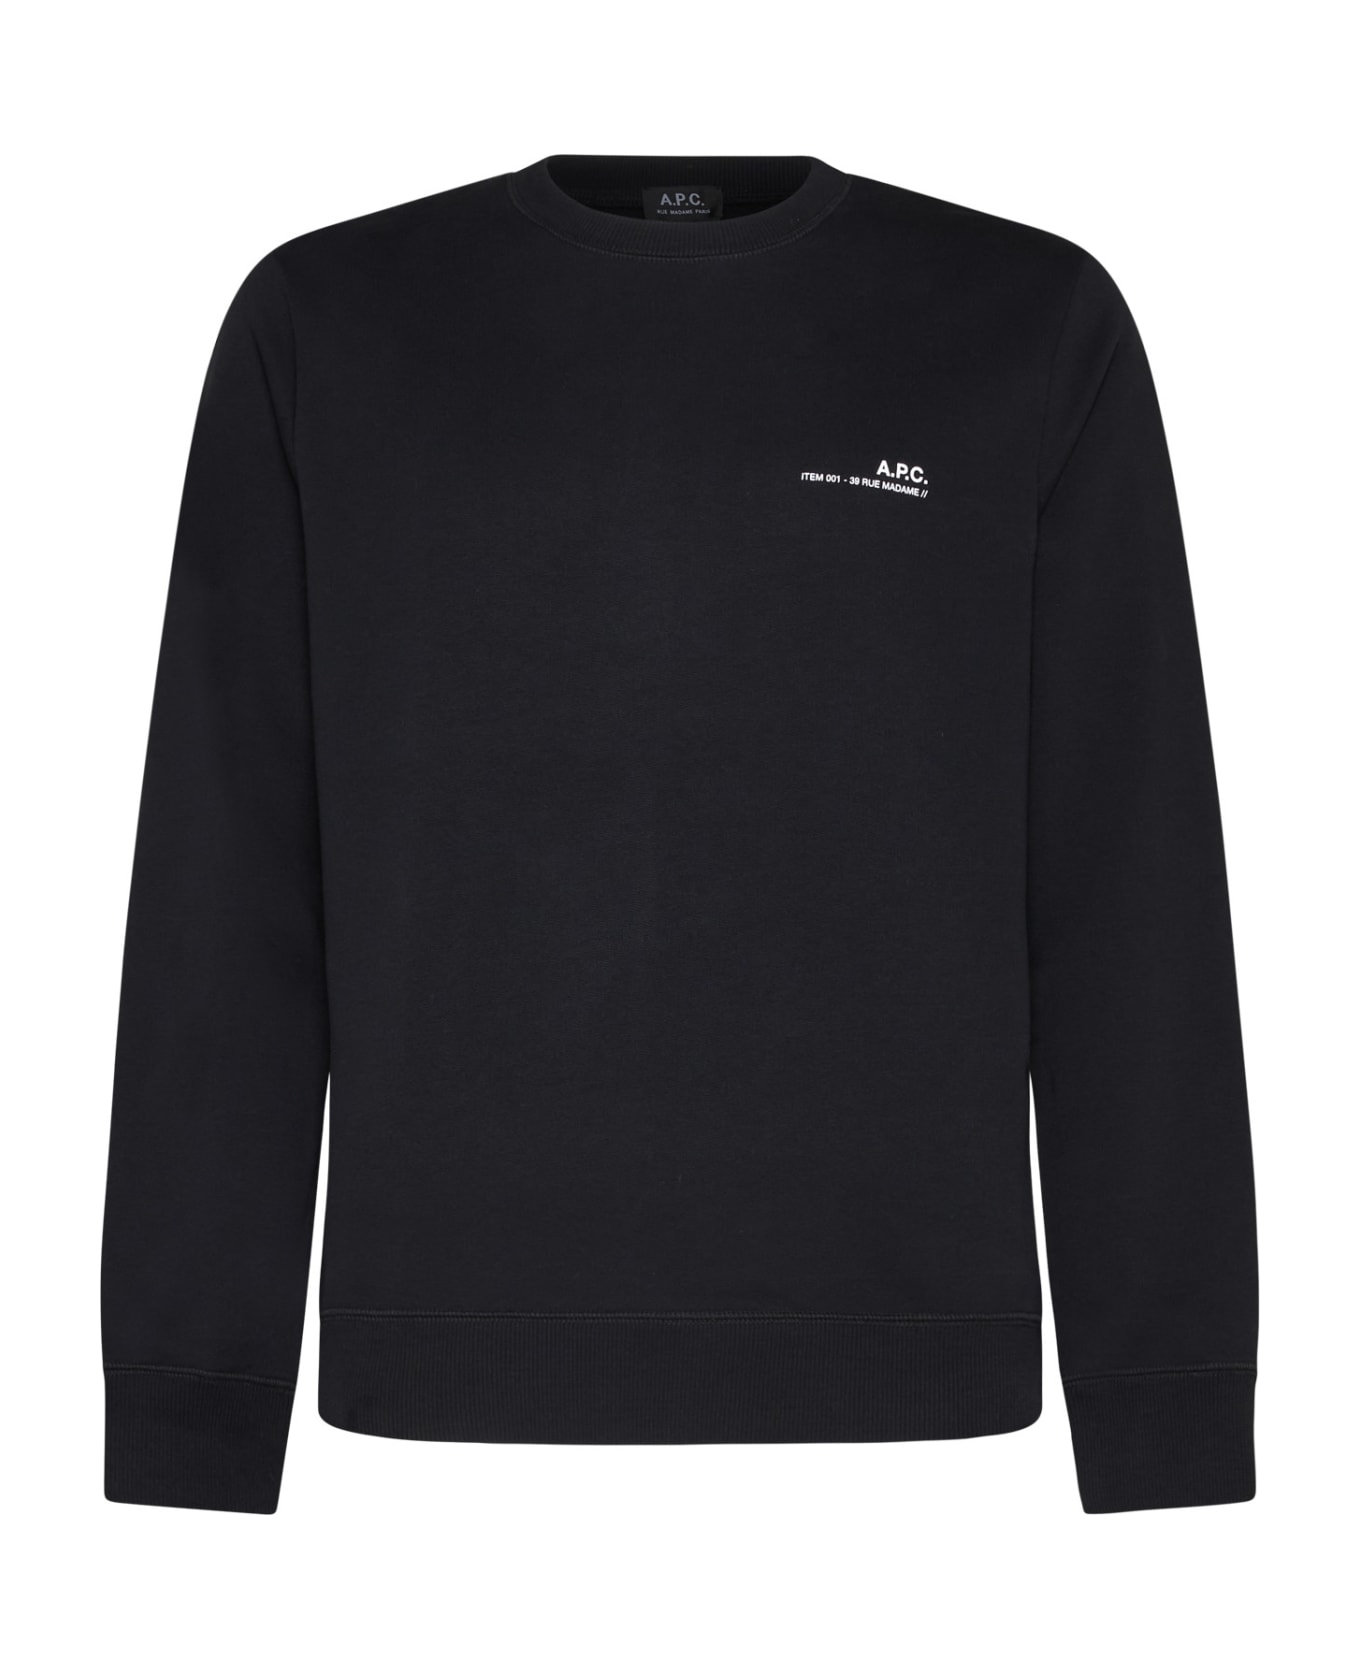 A.P.C. Sweatshirt With Logo - Black フリース